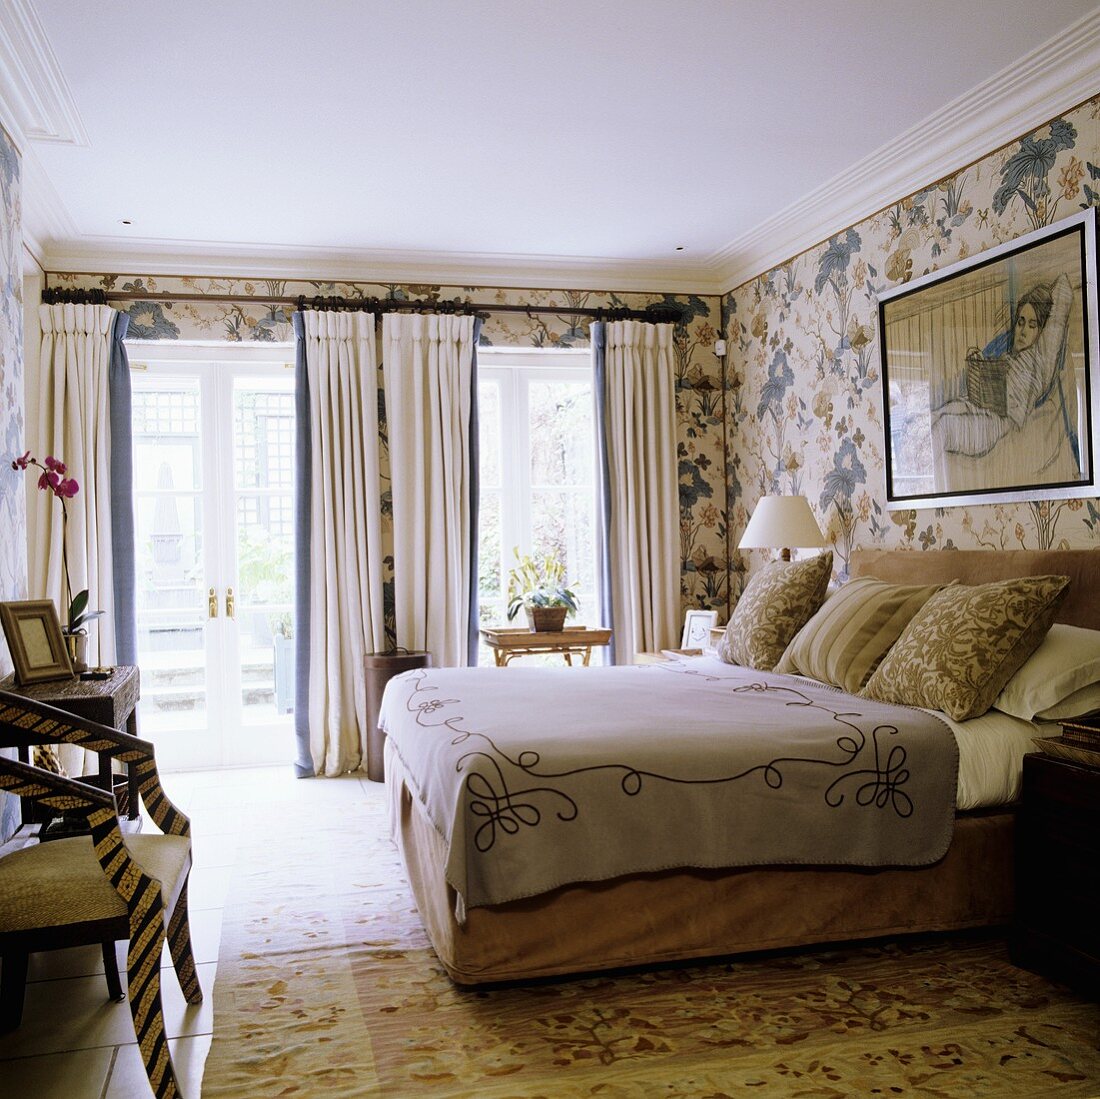 Schlafraum im englischen Stil mit Fenstertüren und Doppelbett vor Tapete mit Blumenmuster